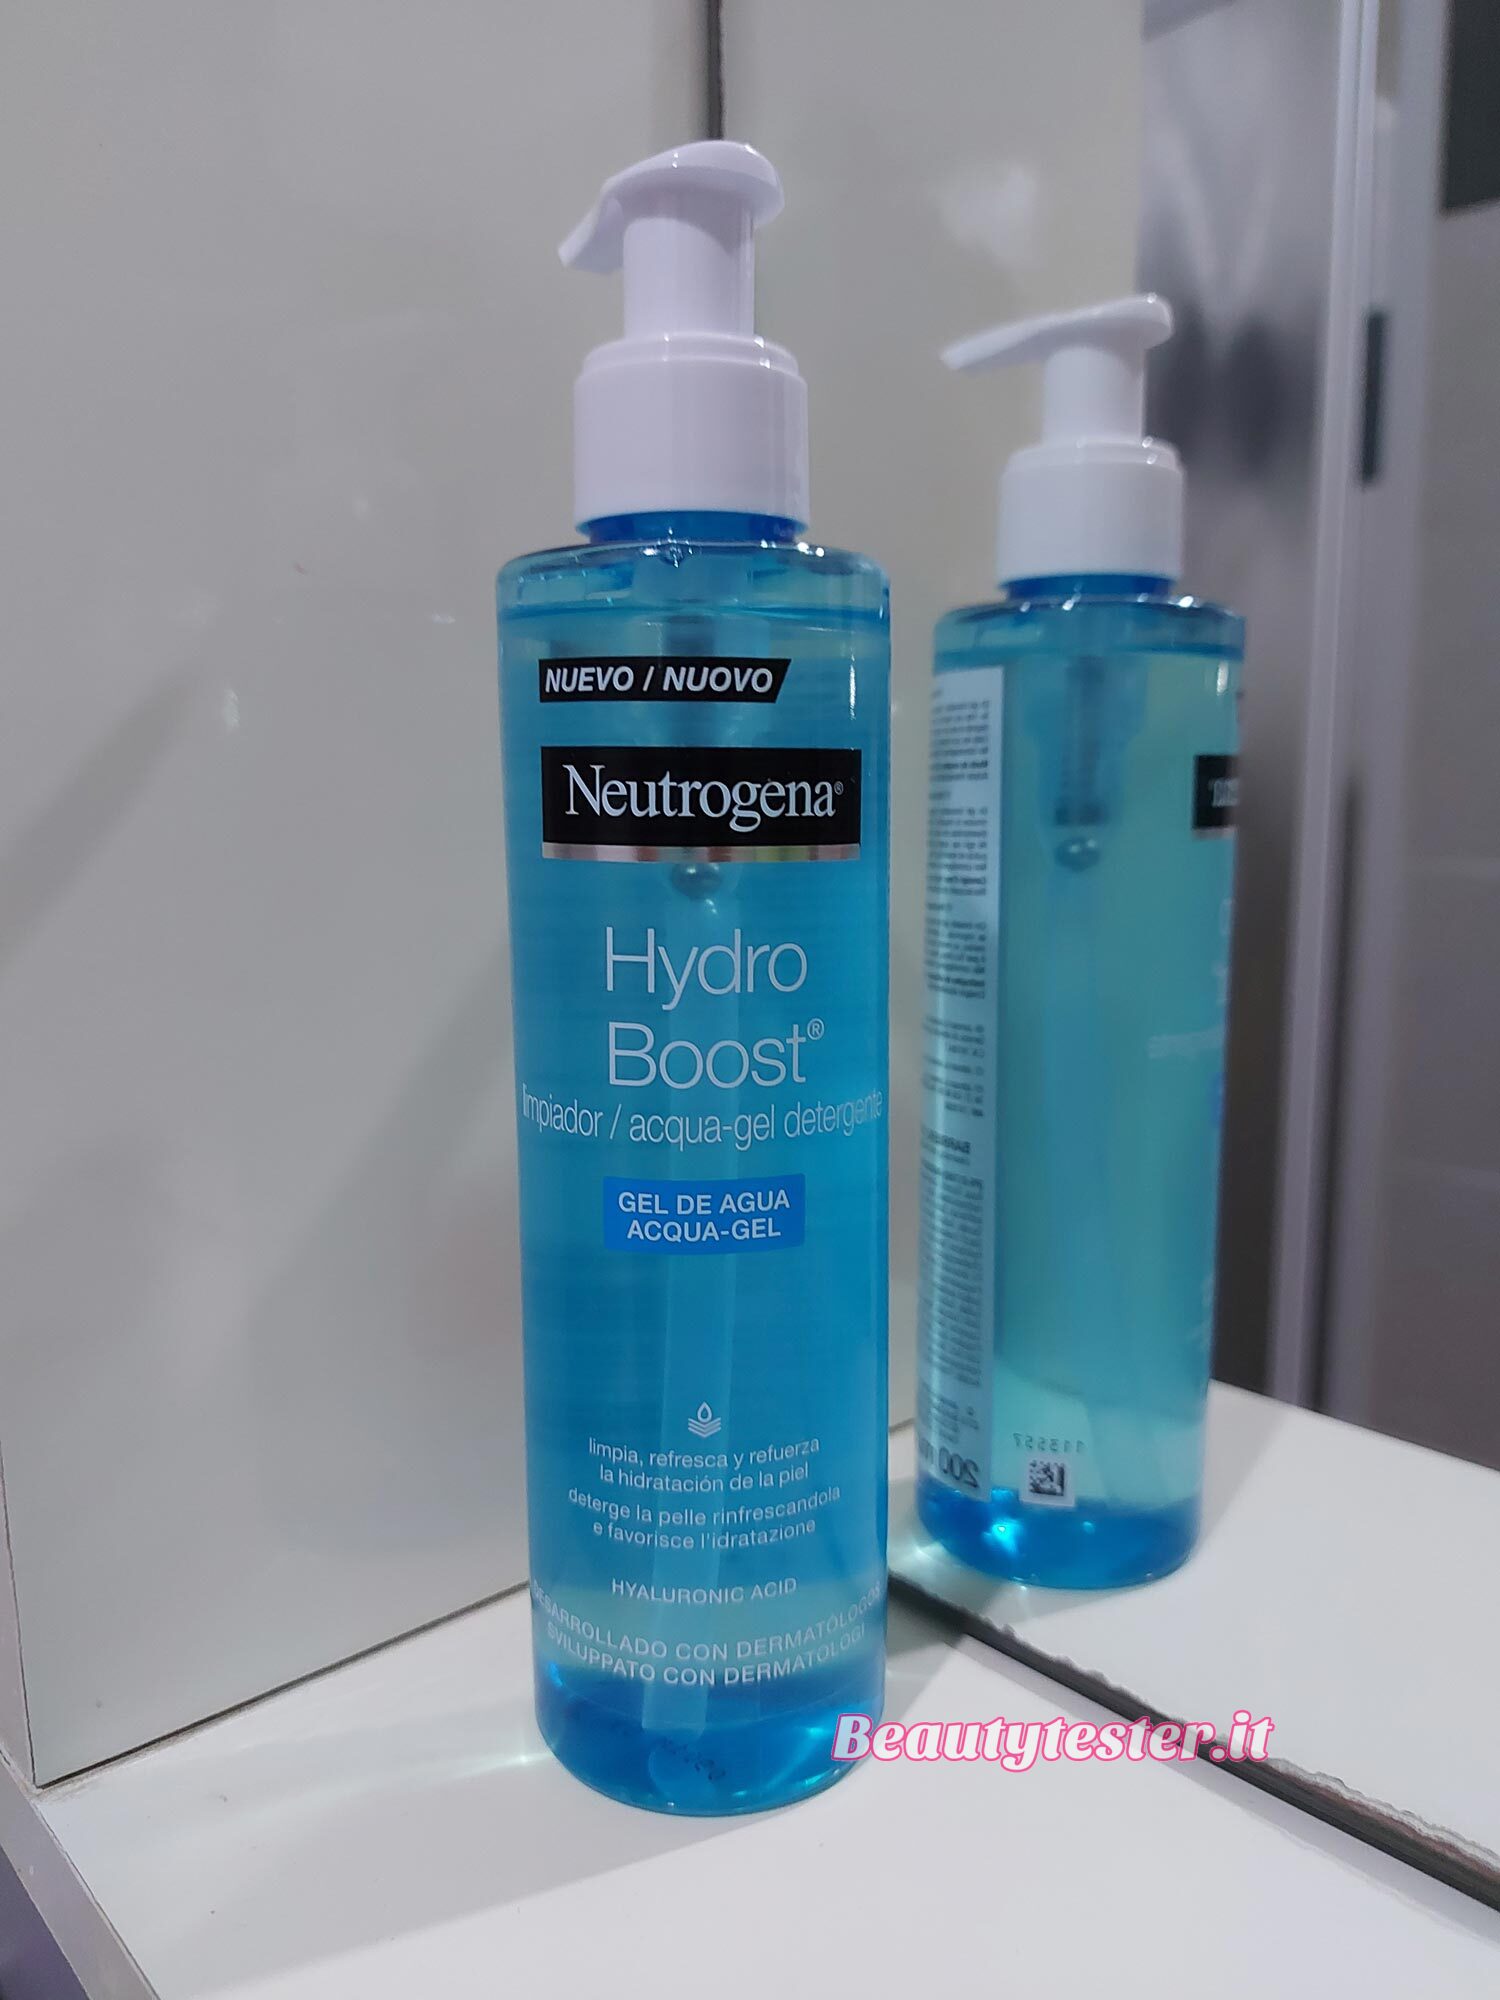 Neutrogena Hydro Boost detergente viso